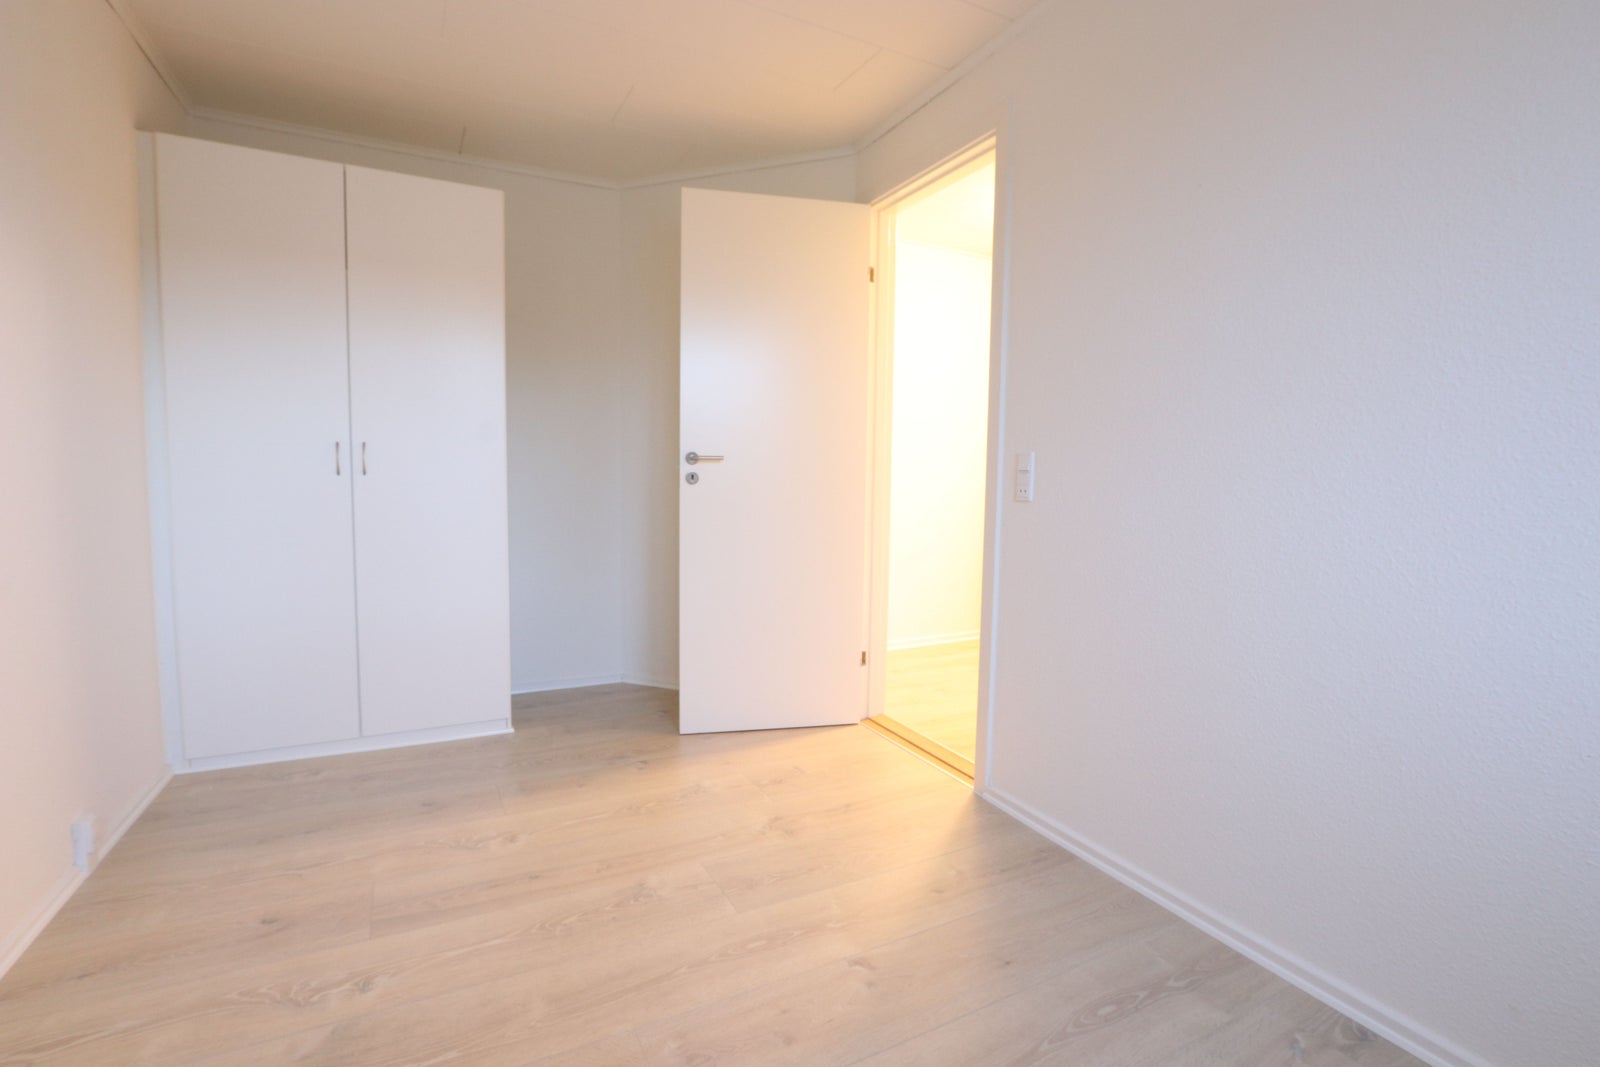 3 værelses lejlighed i Horsens 8700 på 83 kvm